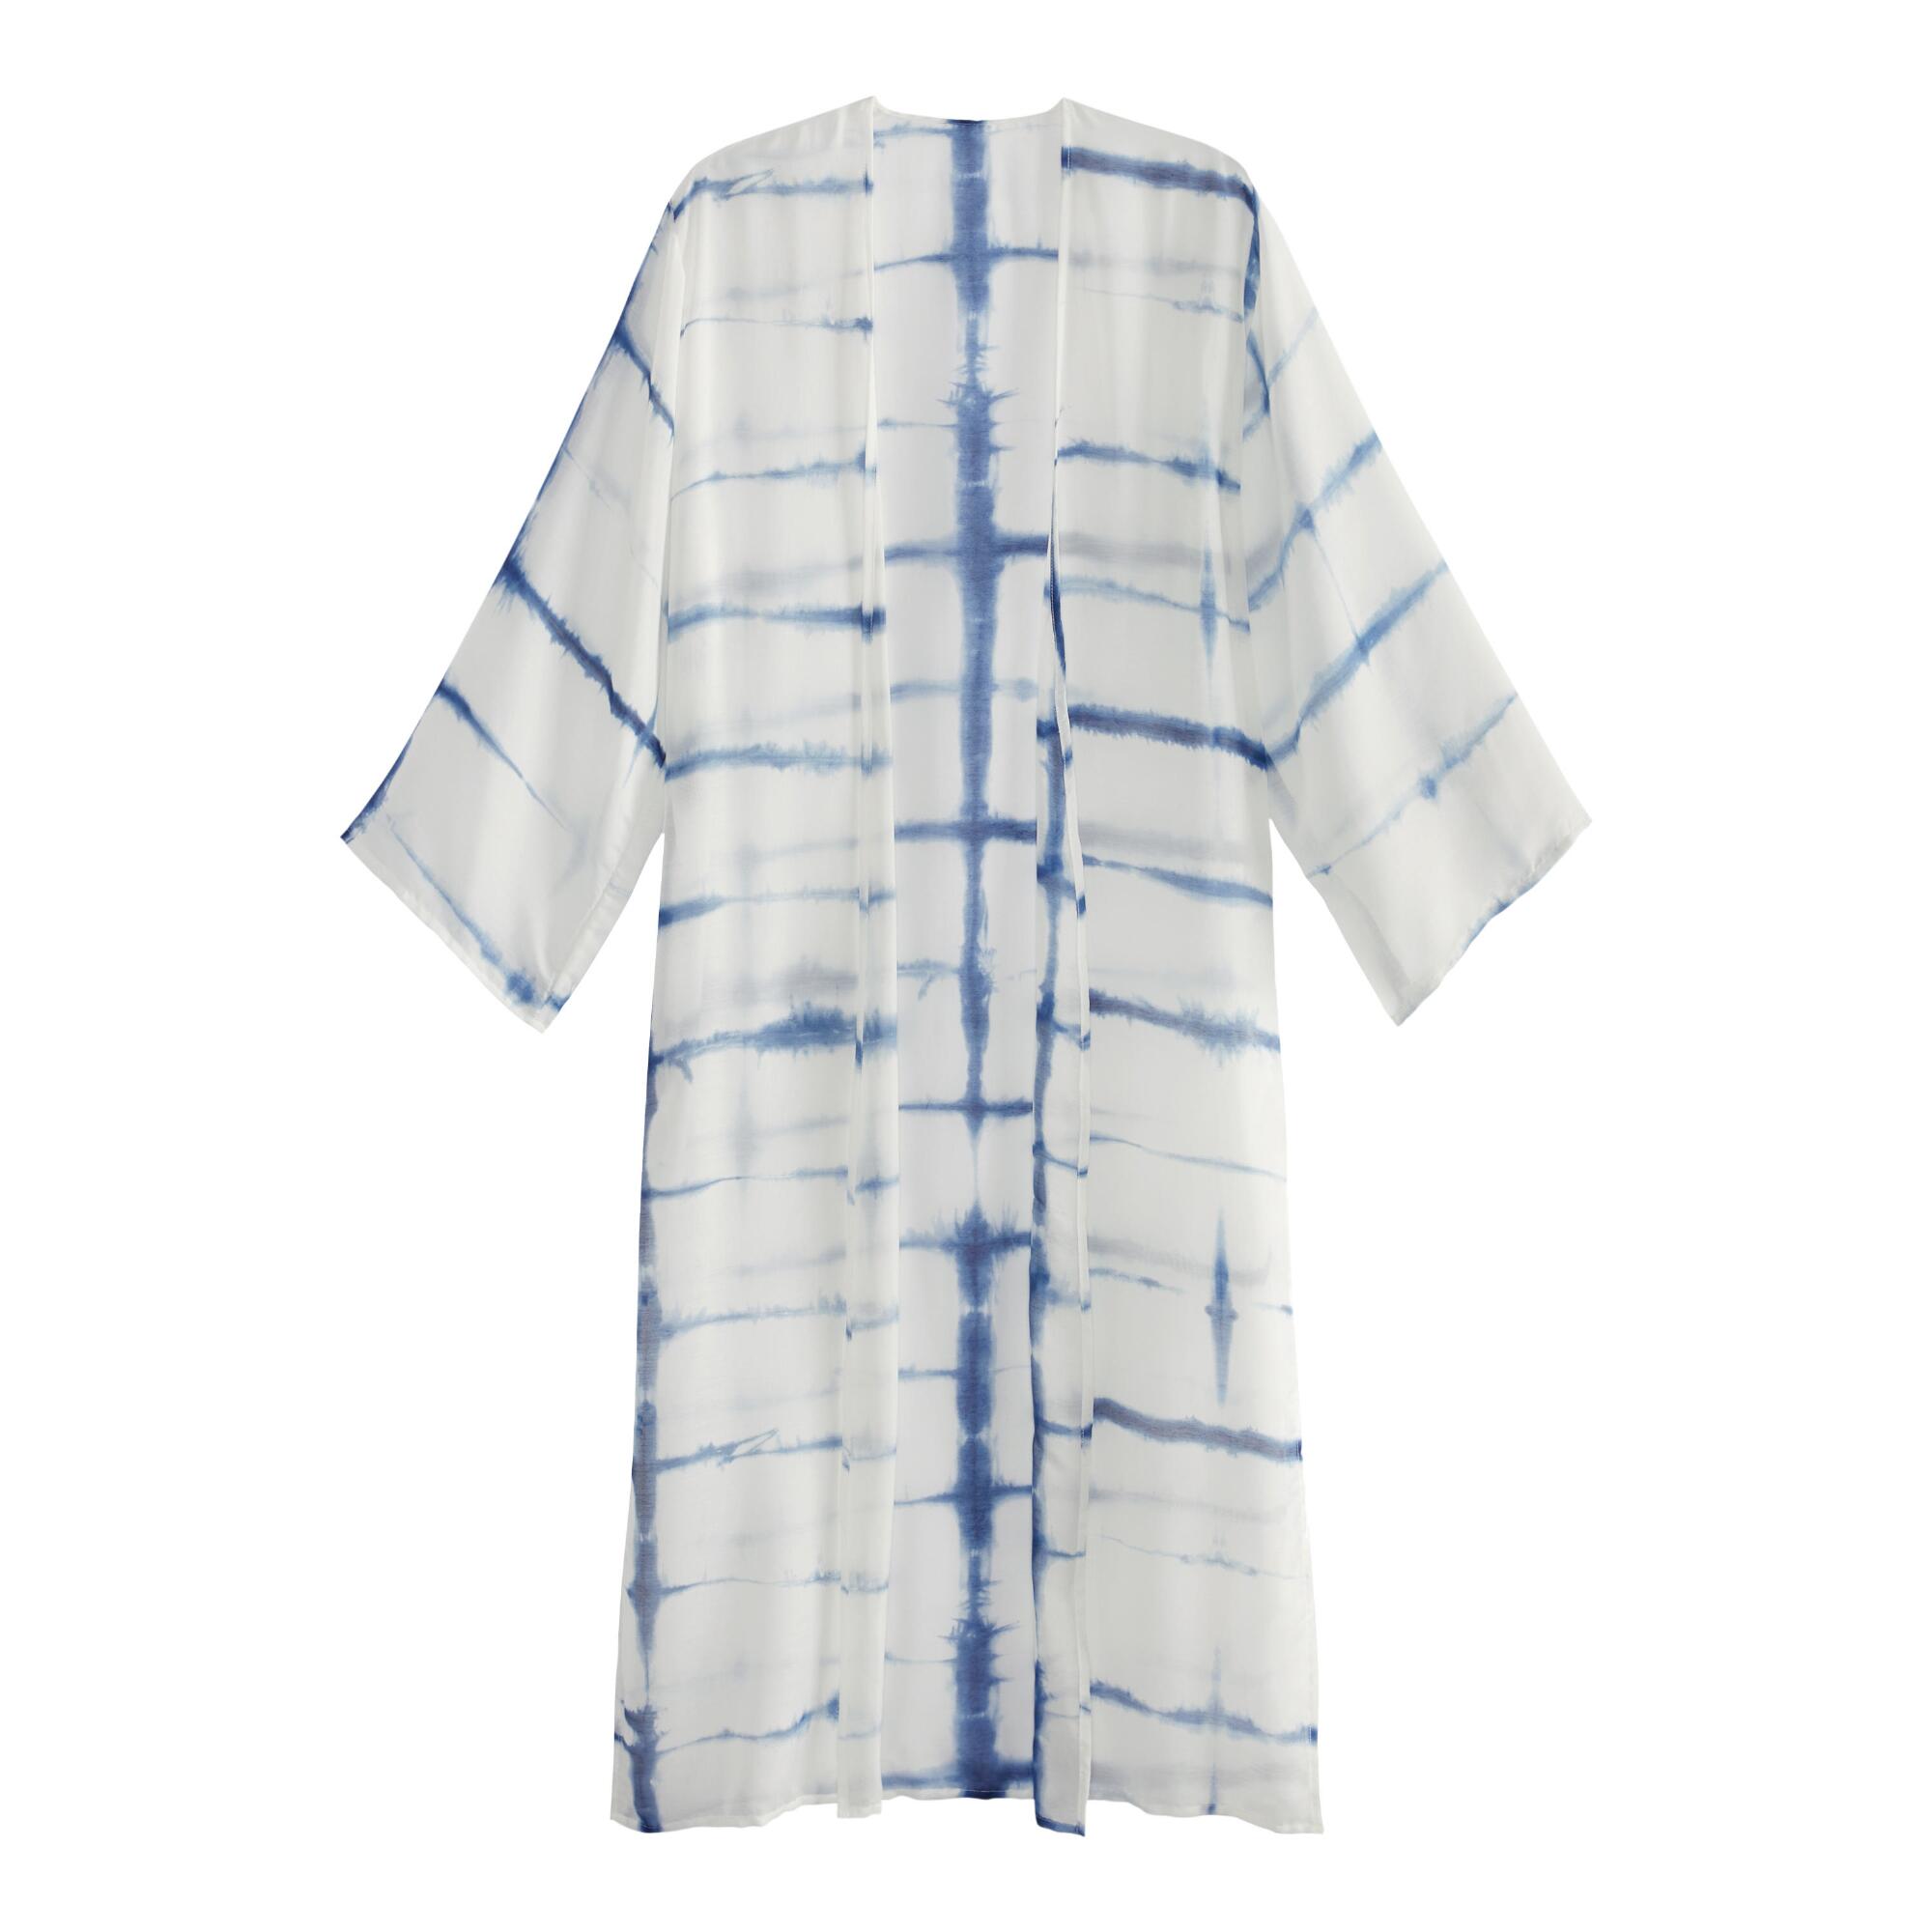 Indigo Blue And White Tie Dye Long Kimono by World Market